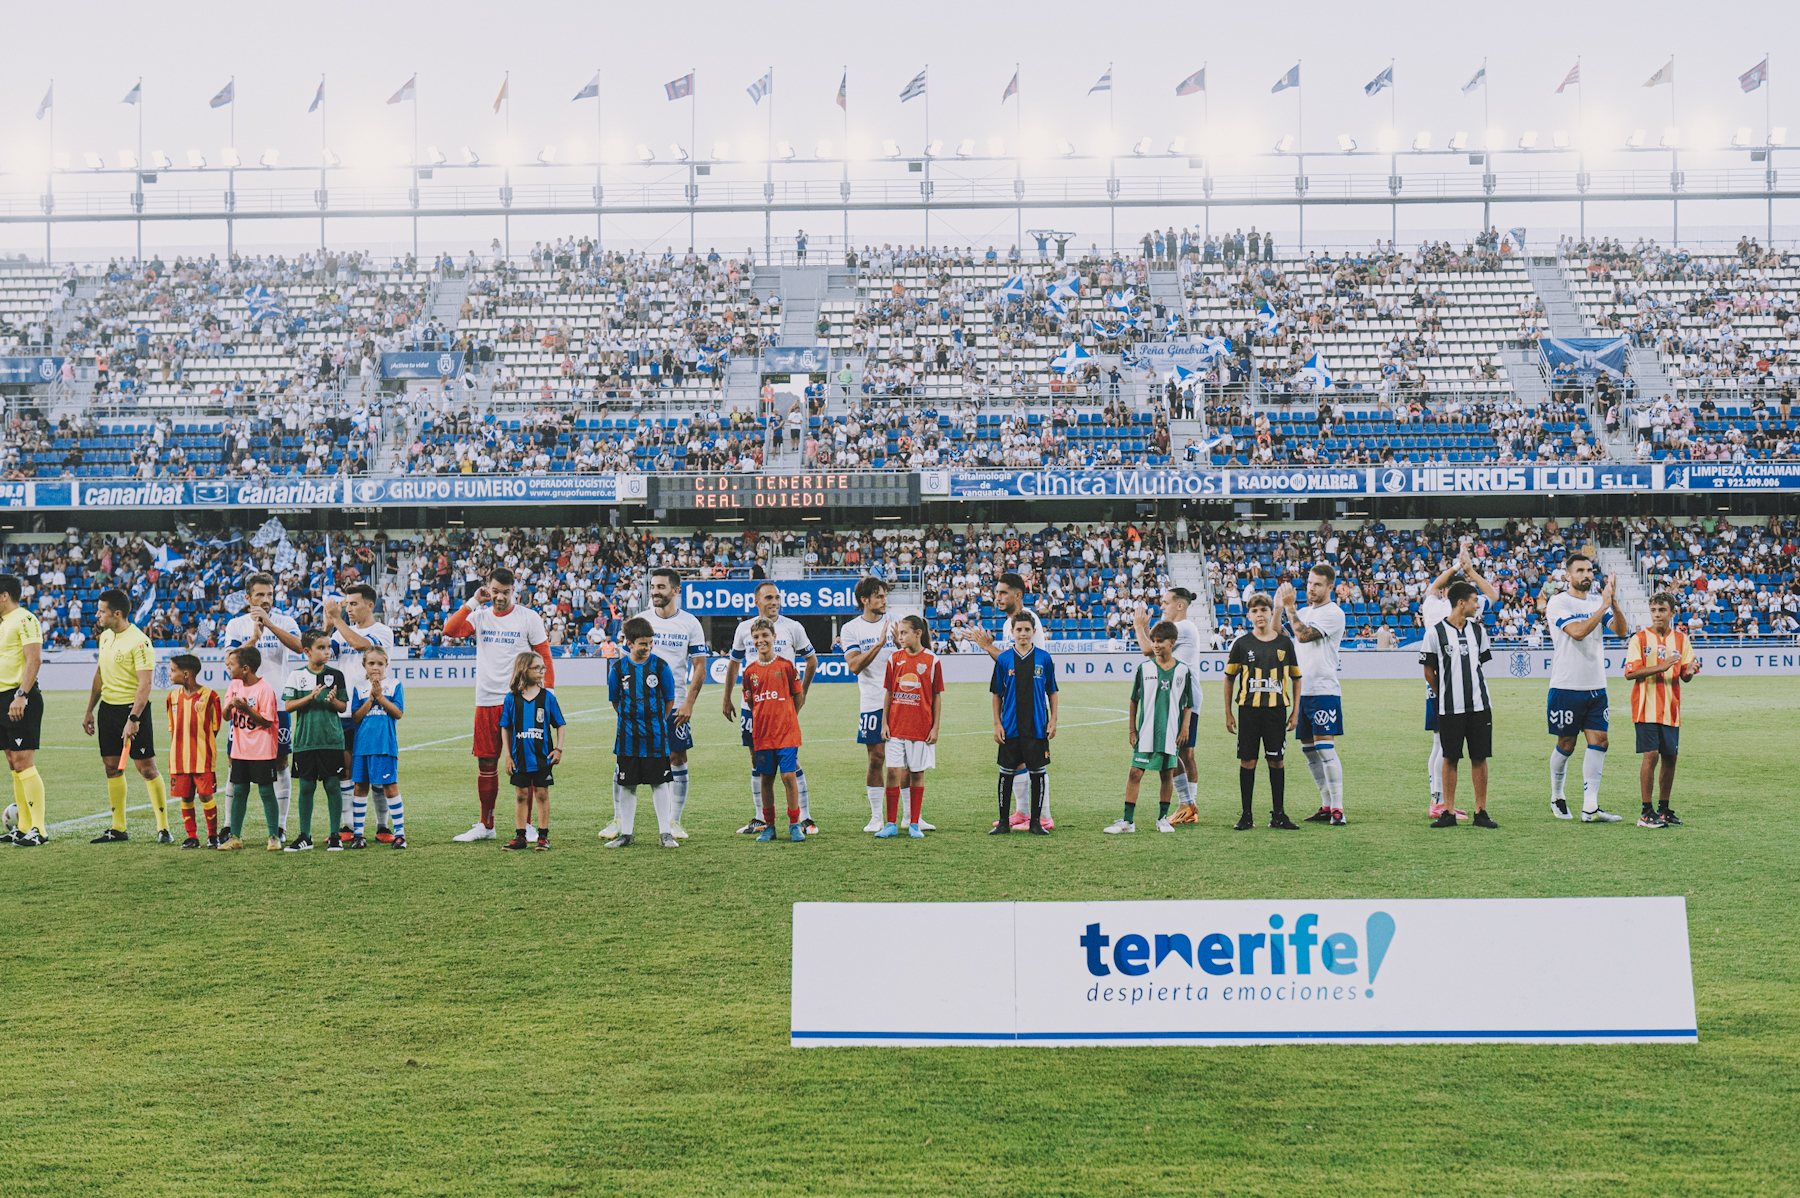 El CD Tenerife salió al terreno de juego junto a niños/as de los clubes con convenio